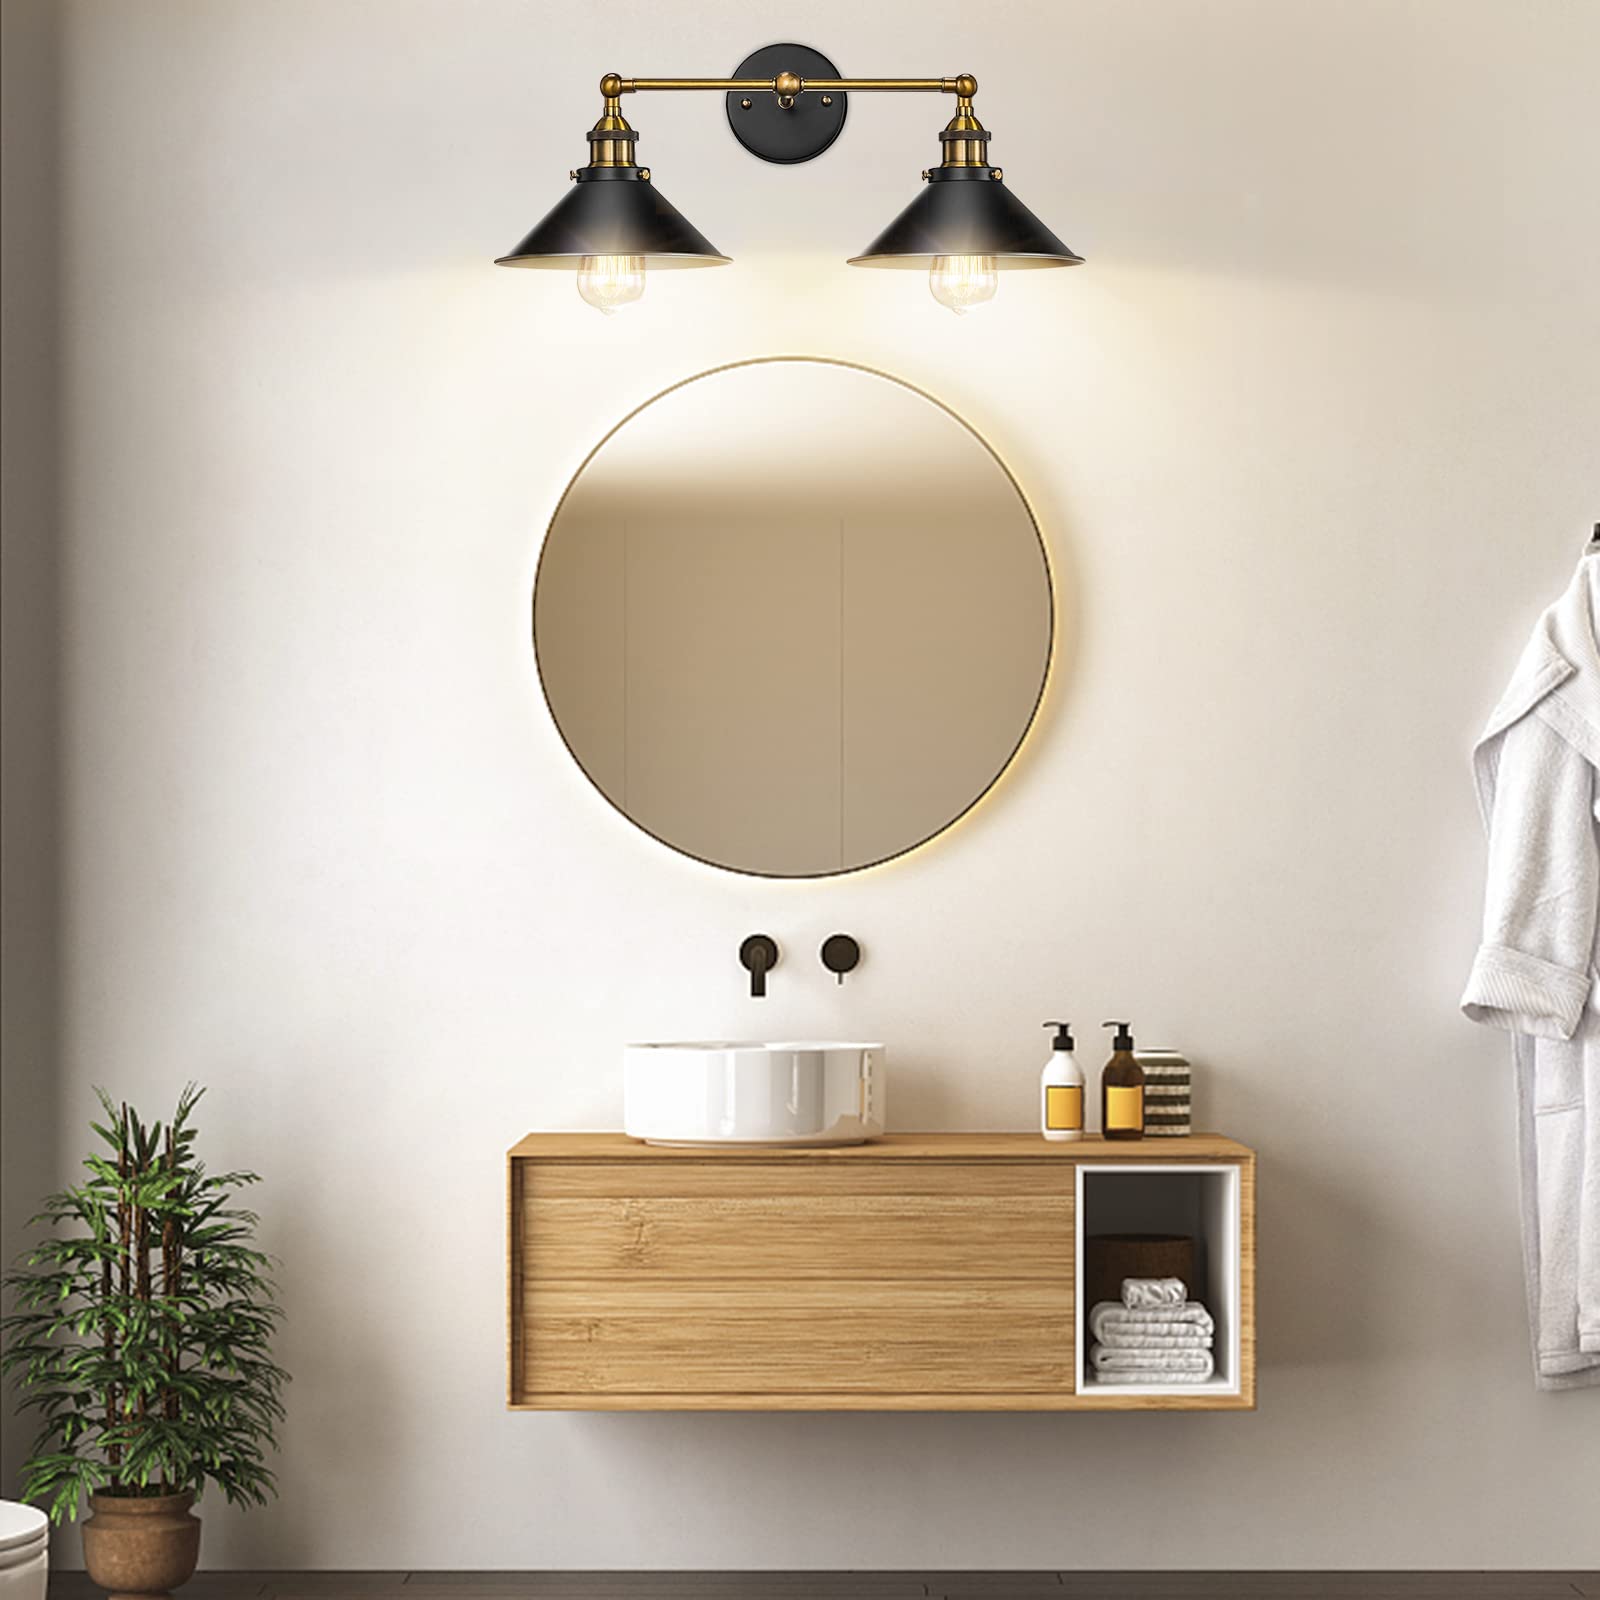 Licperron Gold Bathroom Light Fixtures, Bathroom Fixtures, Vanity Lights for Bathroom Kitchen Living Room(2 Lights)